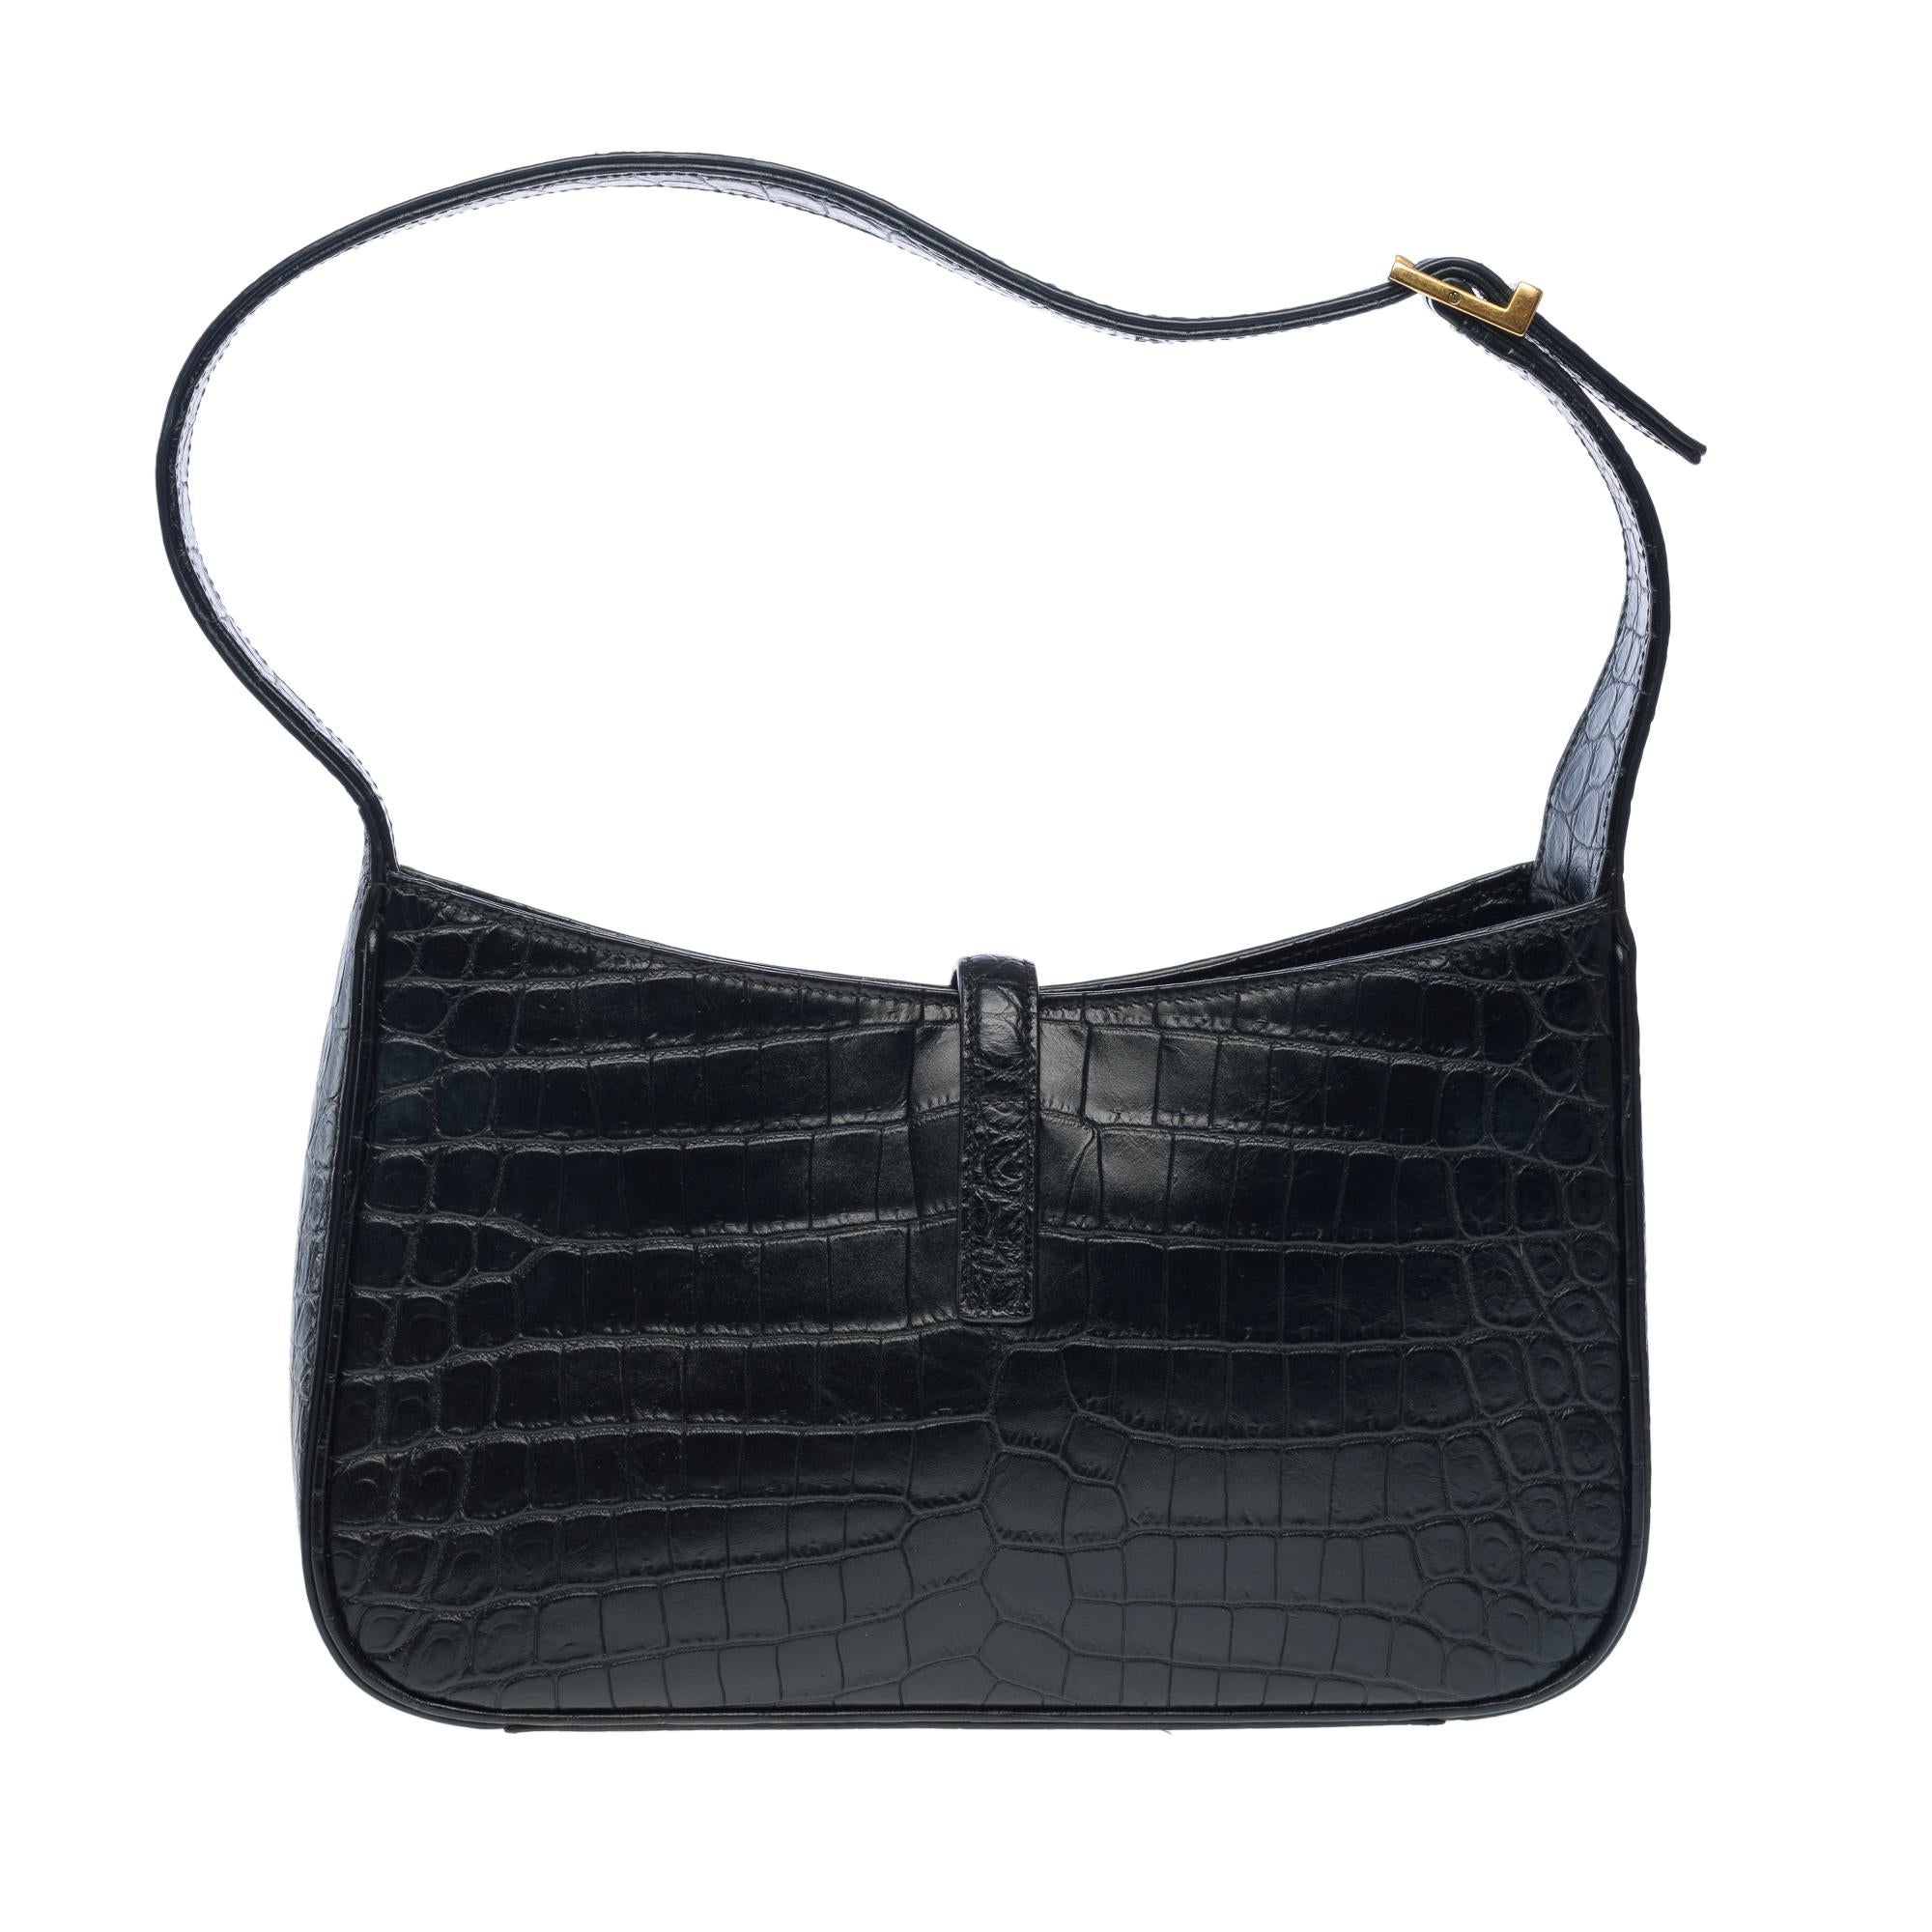 Women's or Men's Yves Saint-Laurent 5 à 7 hobo bag in black calf leather, GHW